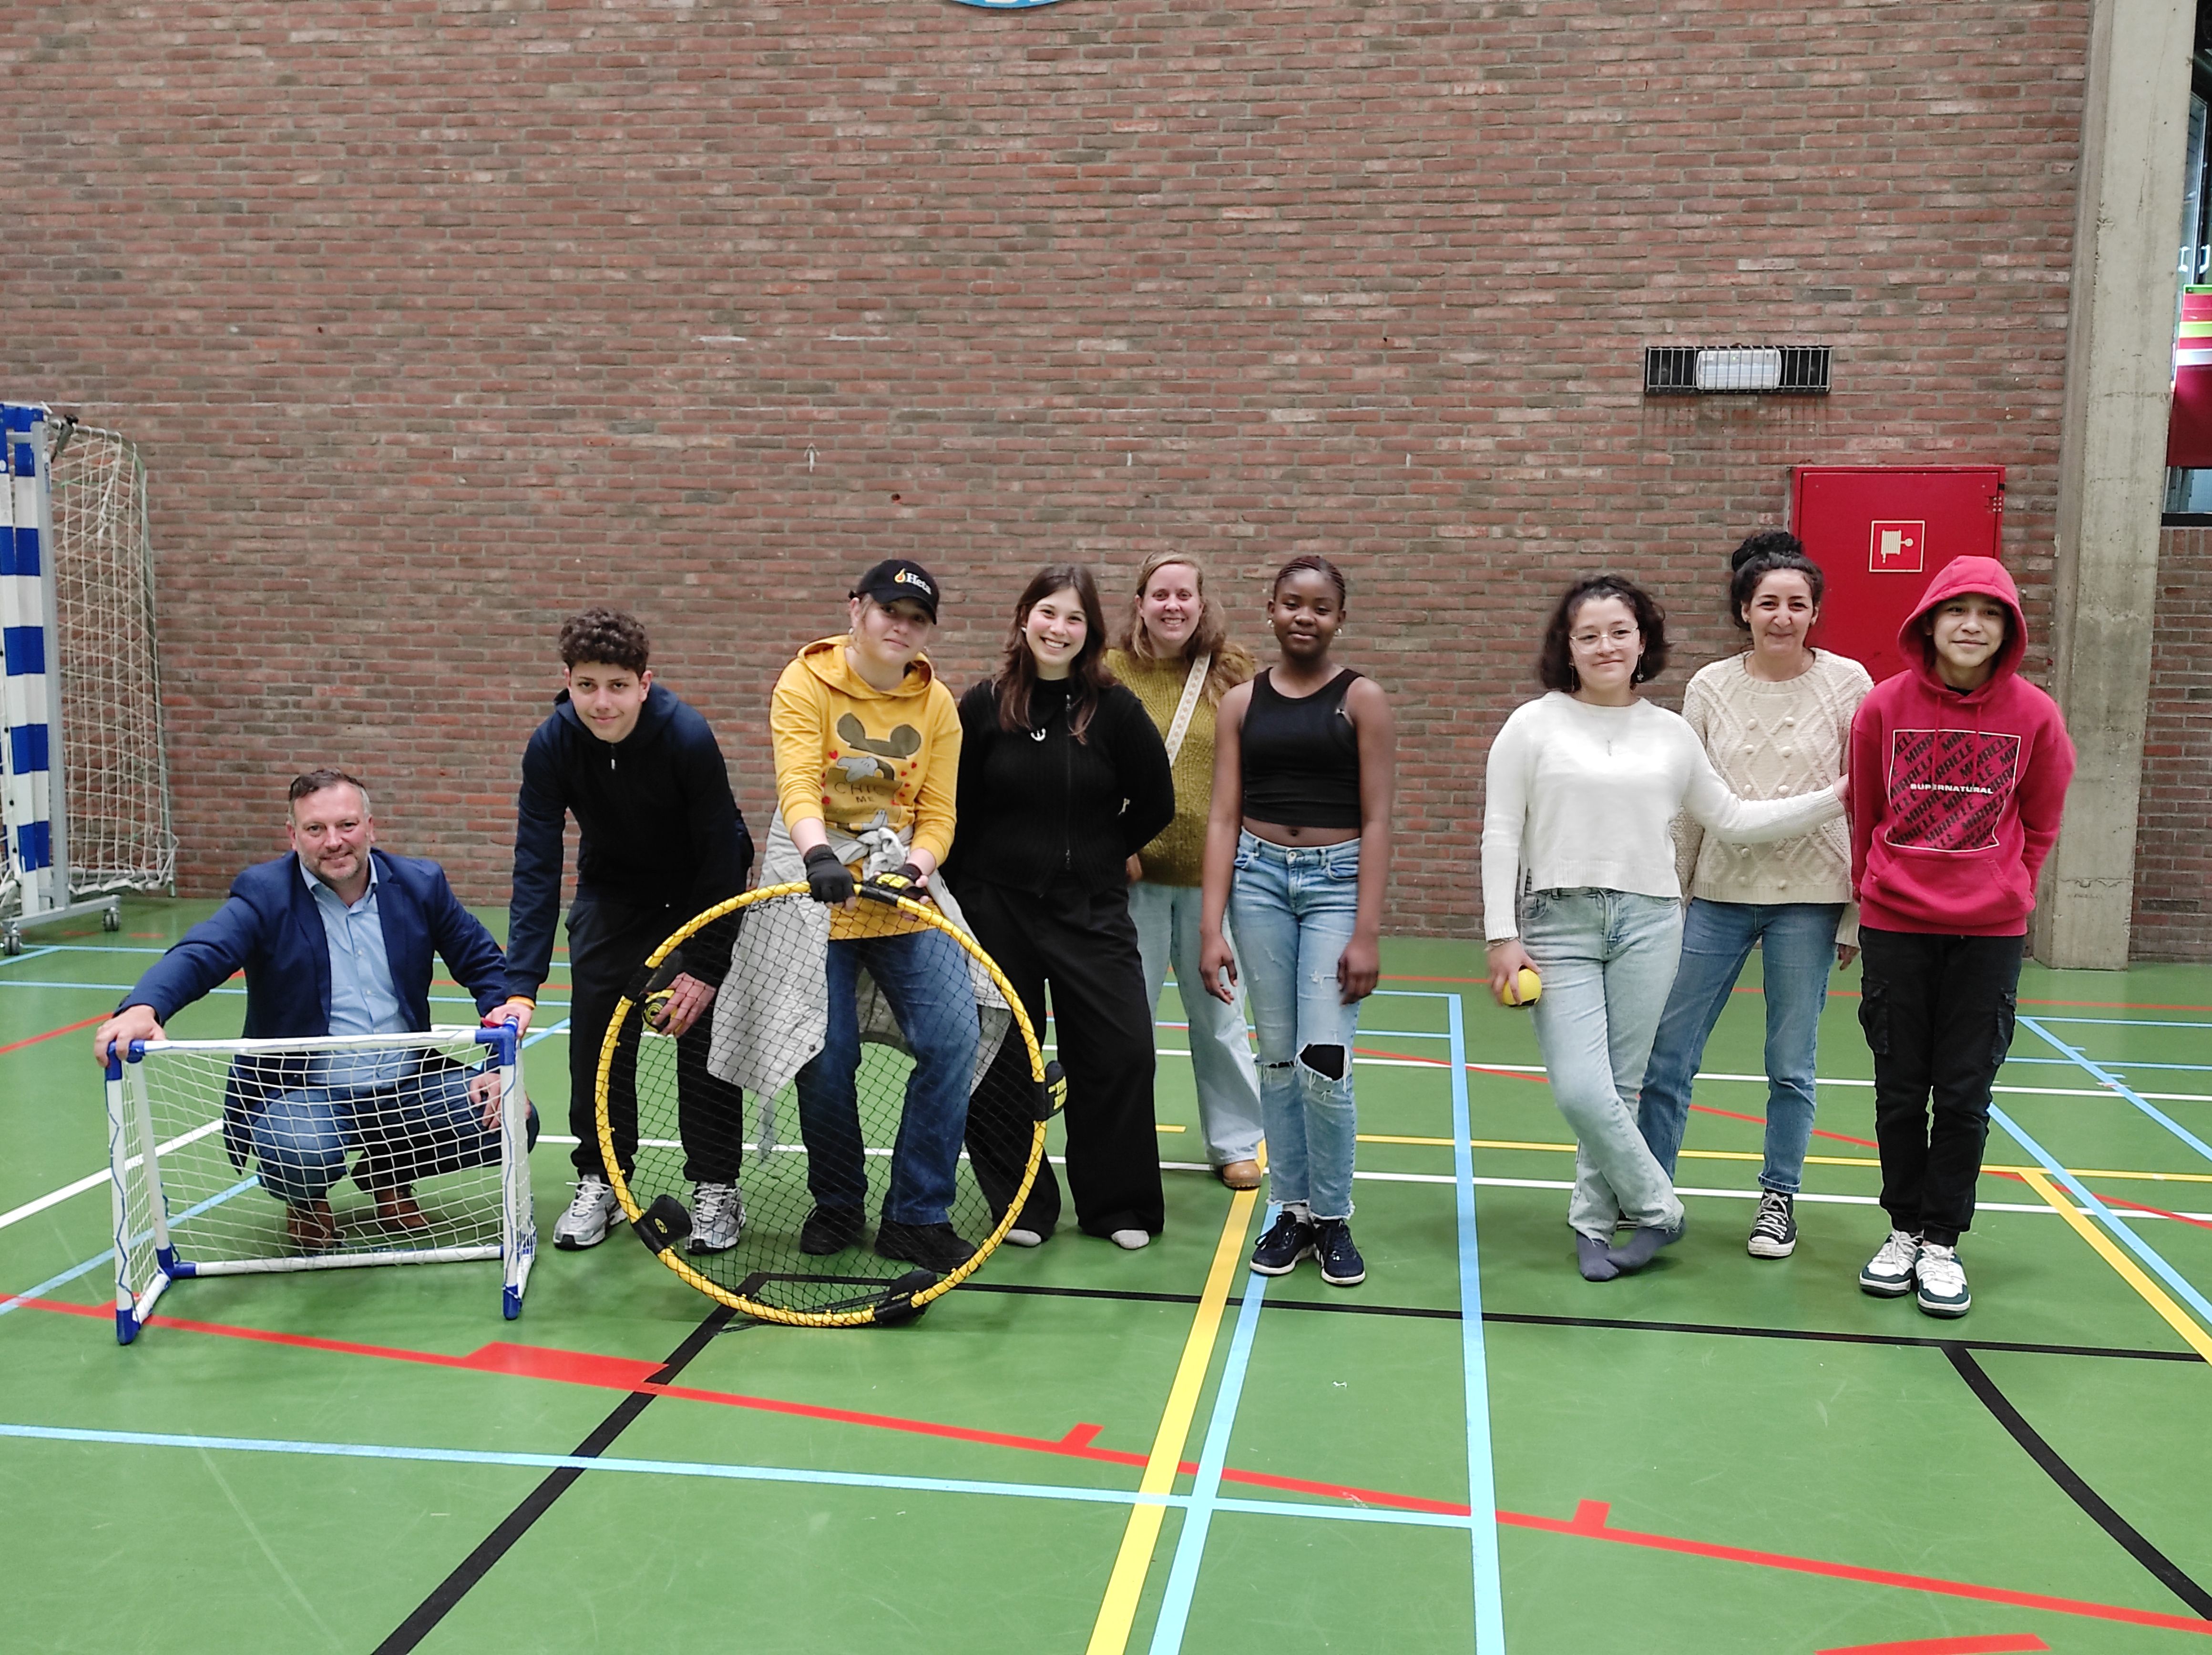 Via 'OKAN in actie' komen anderstalige leerlingen in aanraking met vrijetijdsactiviteiten waardoor hun Nederlands gestimuleerd wordt.